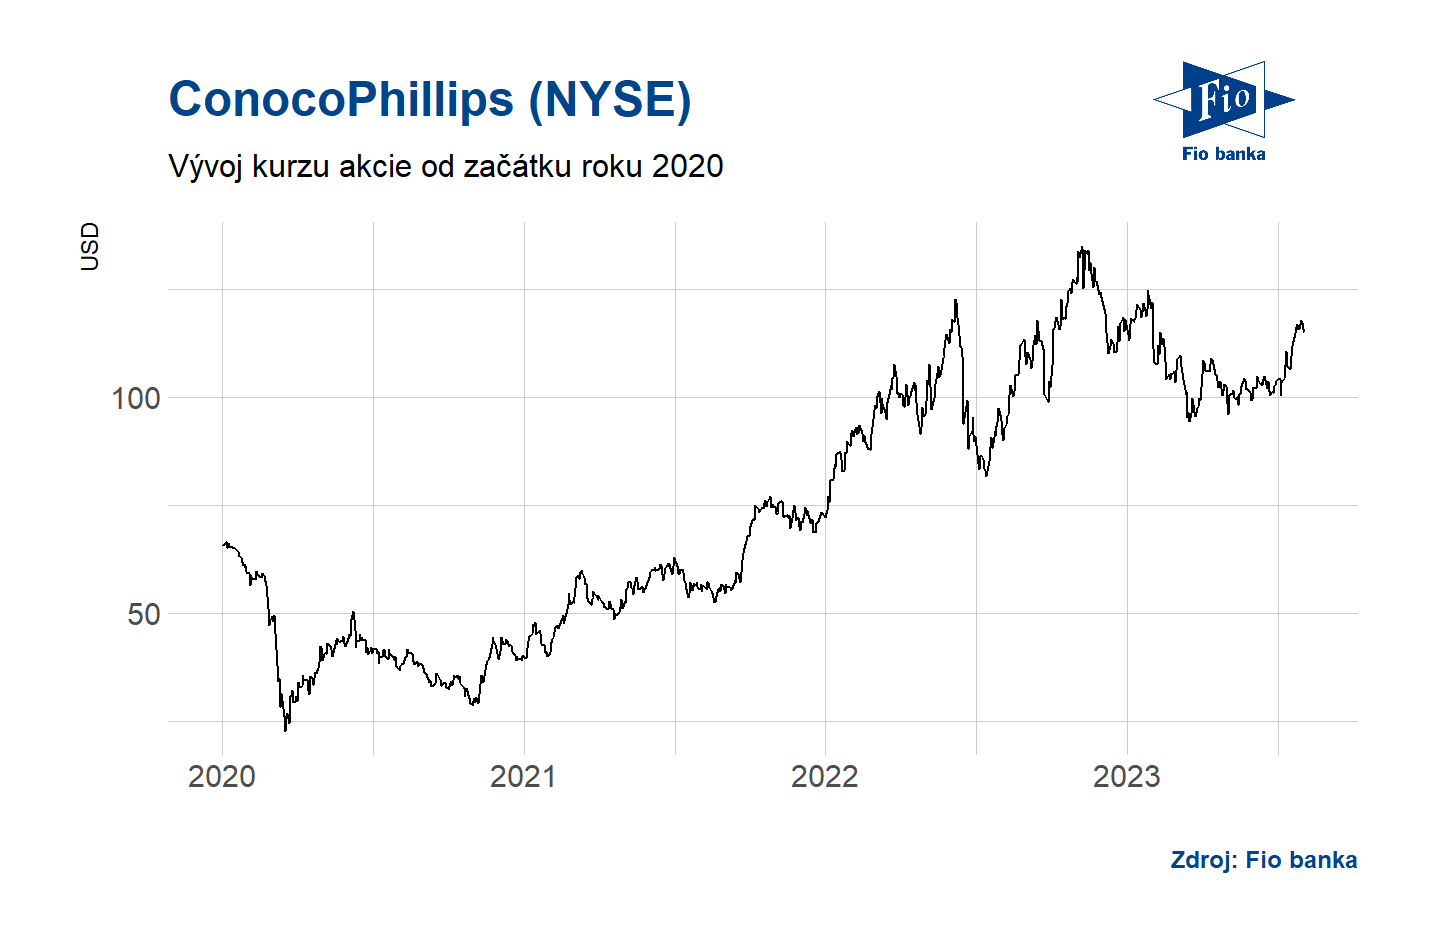 Vývoj akcií ConocoPhillips na americké NYSE